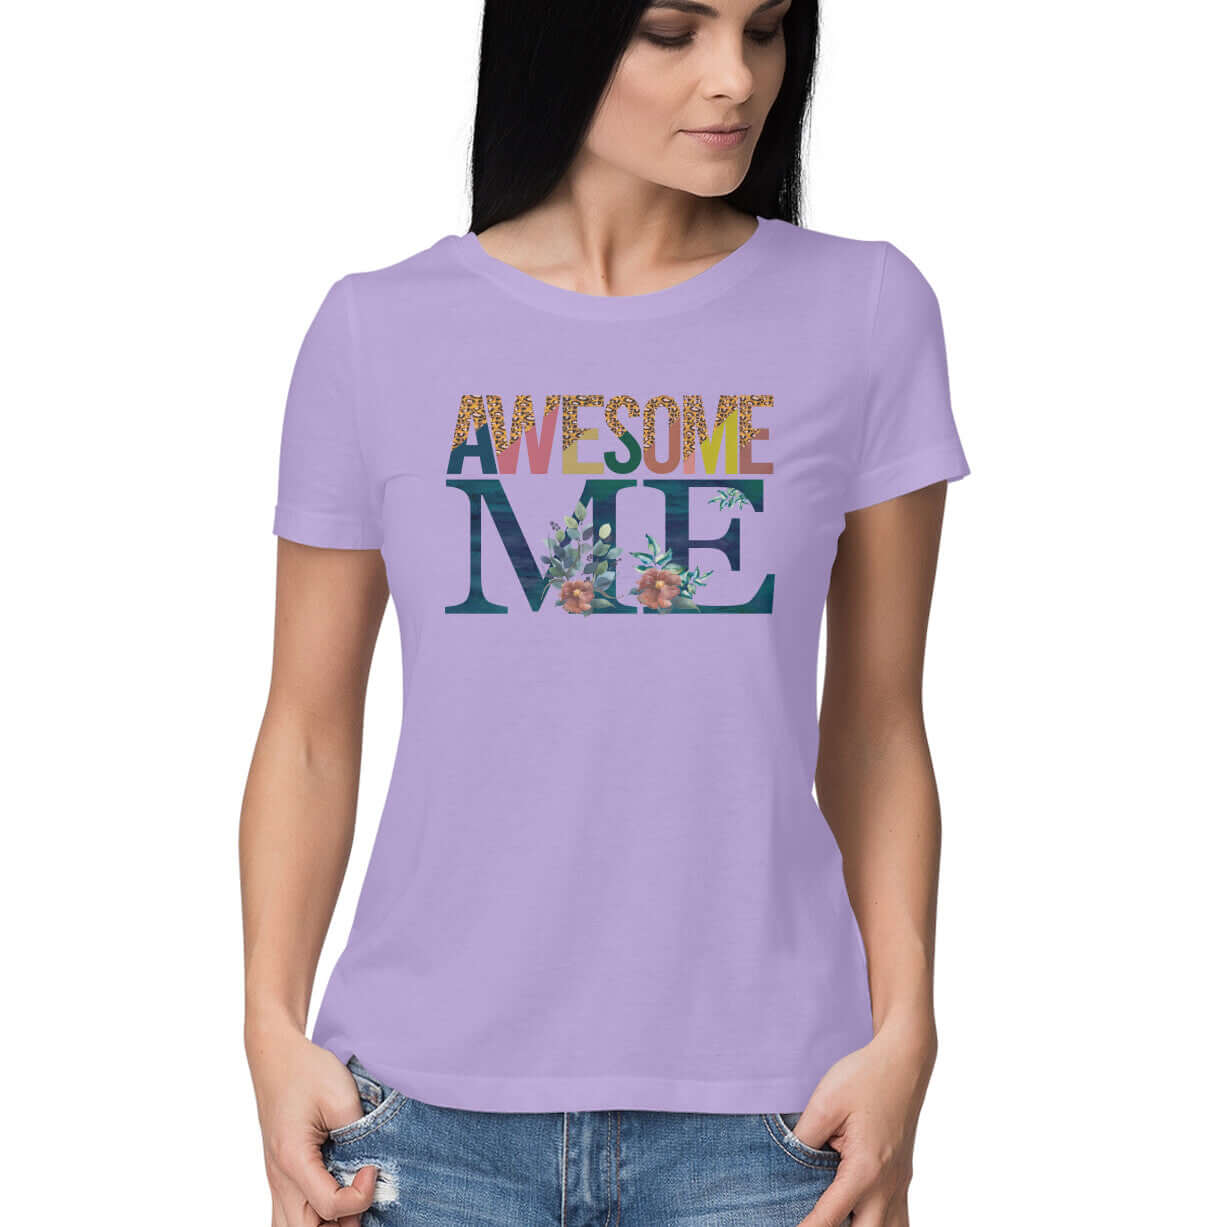 Awesome Me | Women's T-Shirt - FairyBellsKart